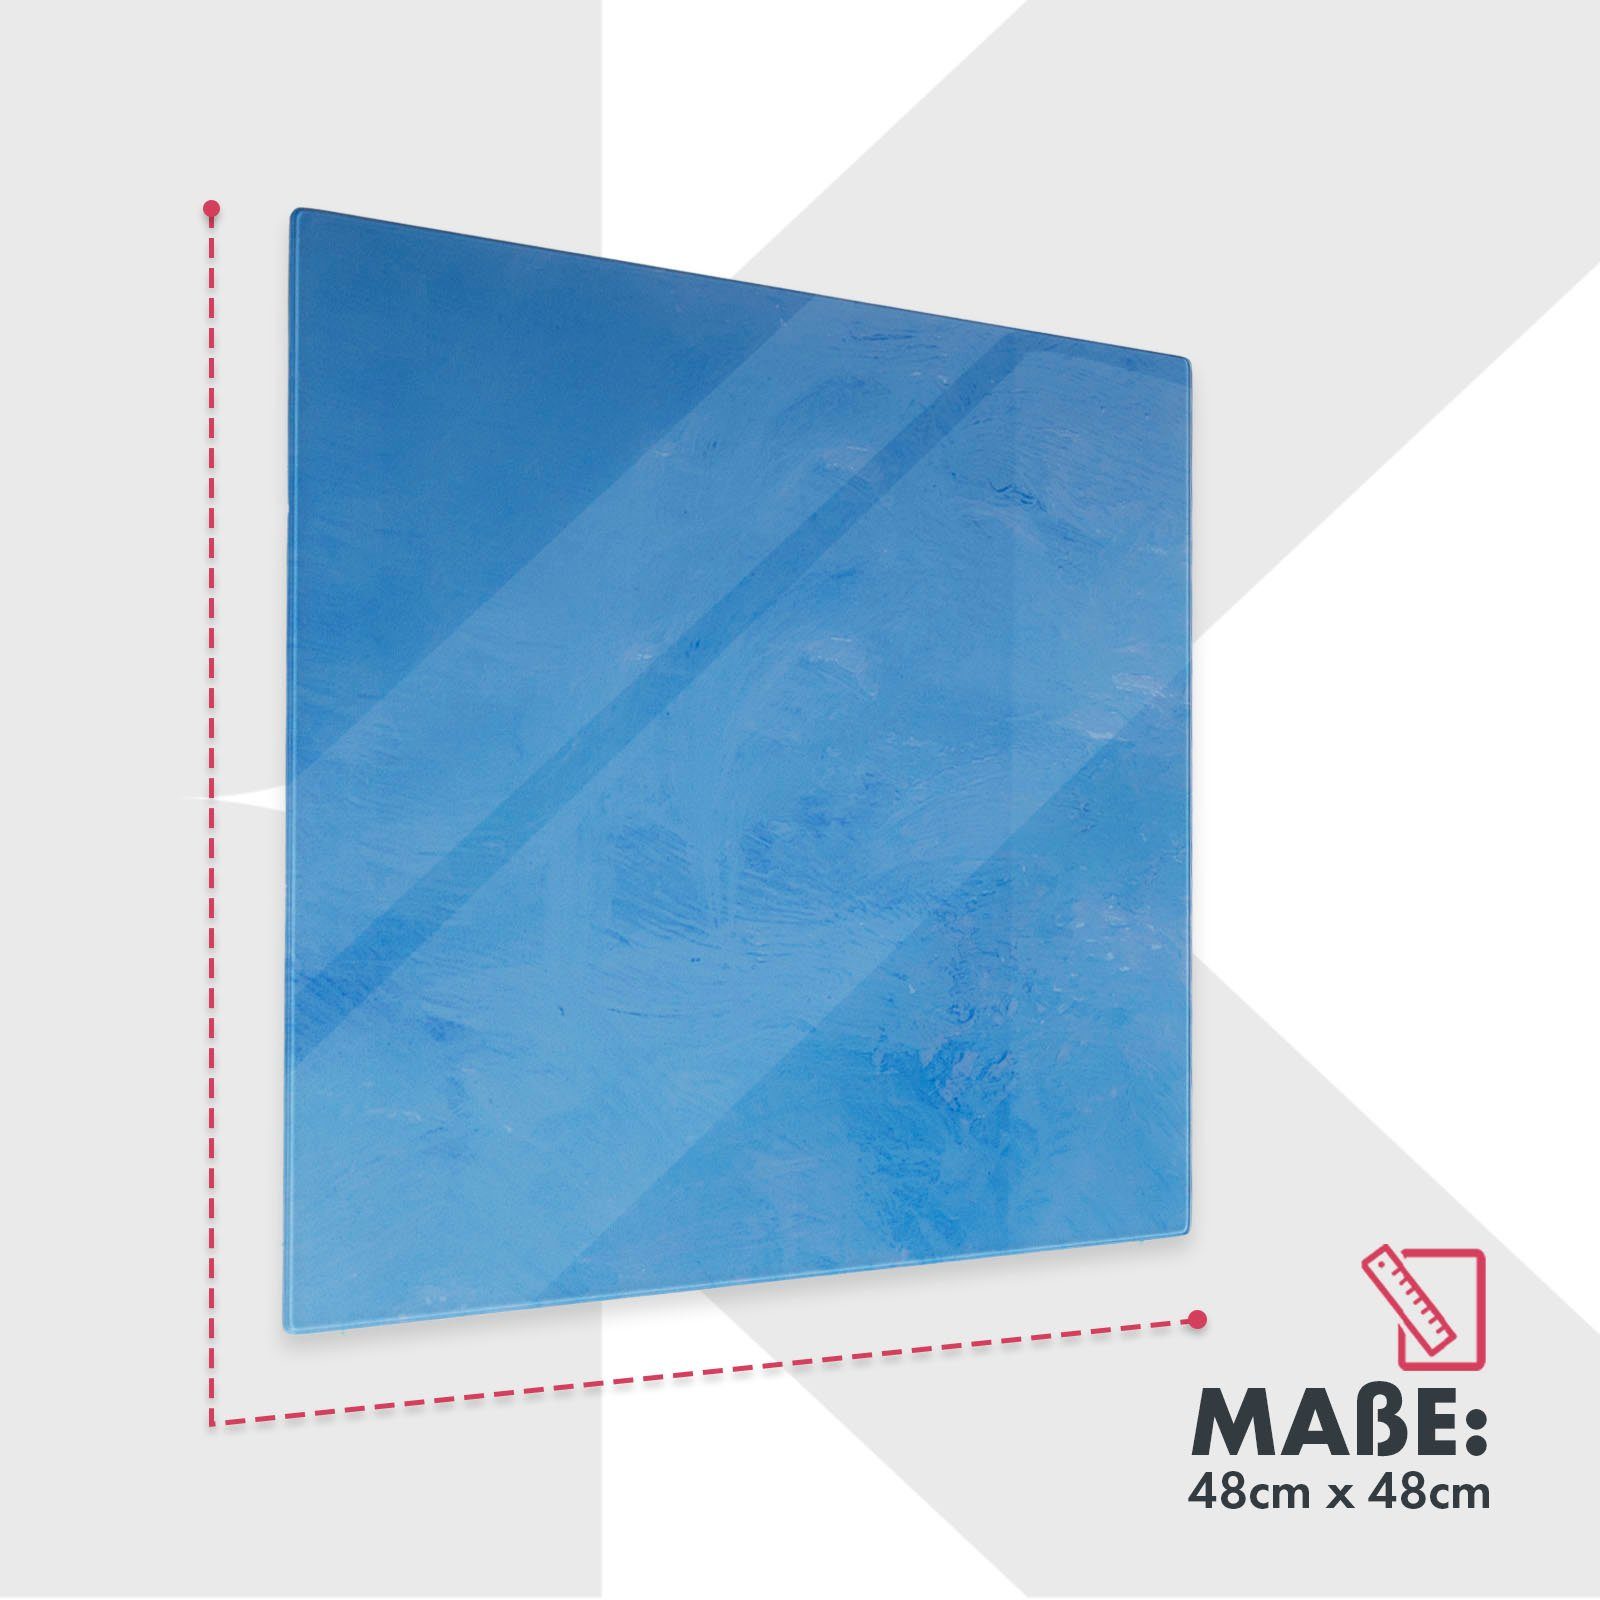 In Print, Farben Memoboard & Karat Mit Montagematerial, Design-Glas-Memoboard Magneten Blau 2